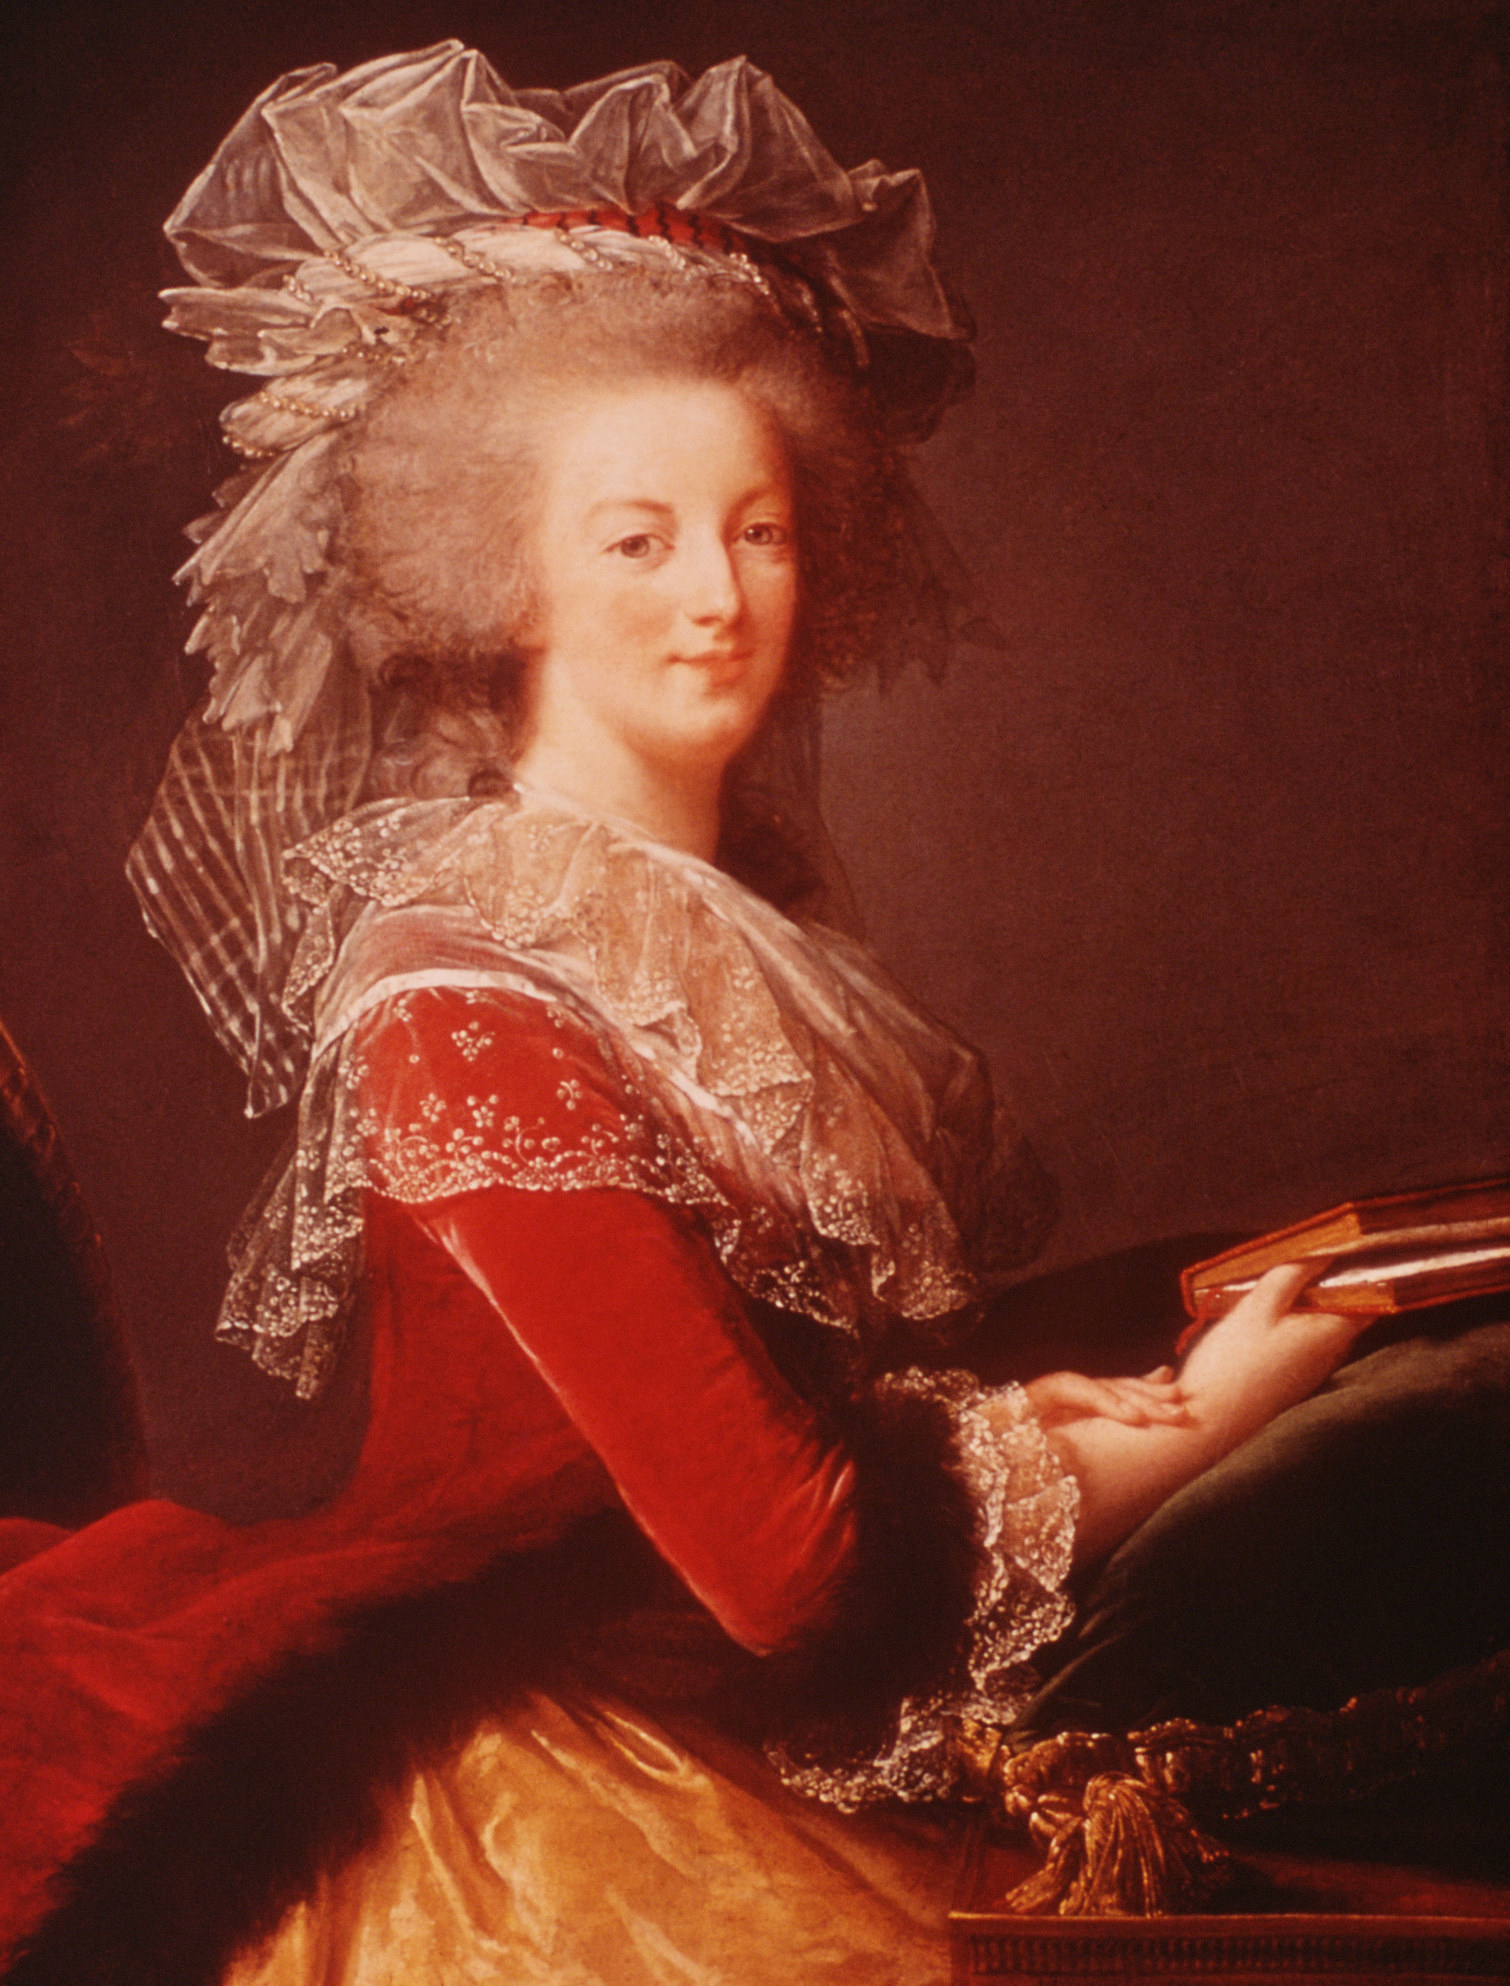 A portrait of Marie Antoinette